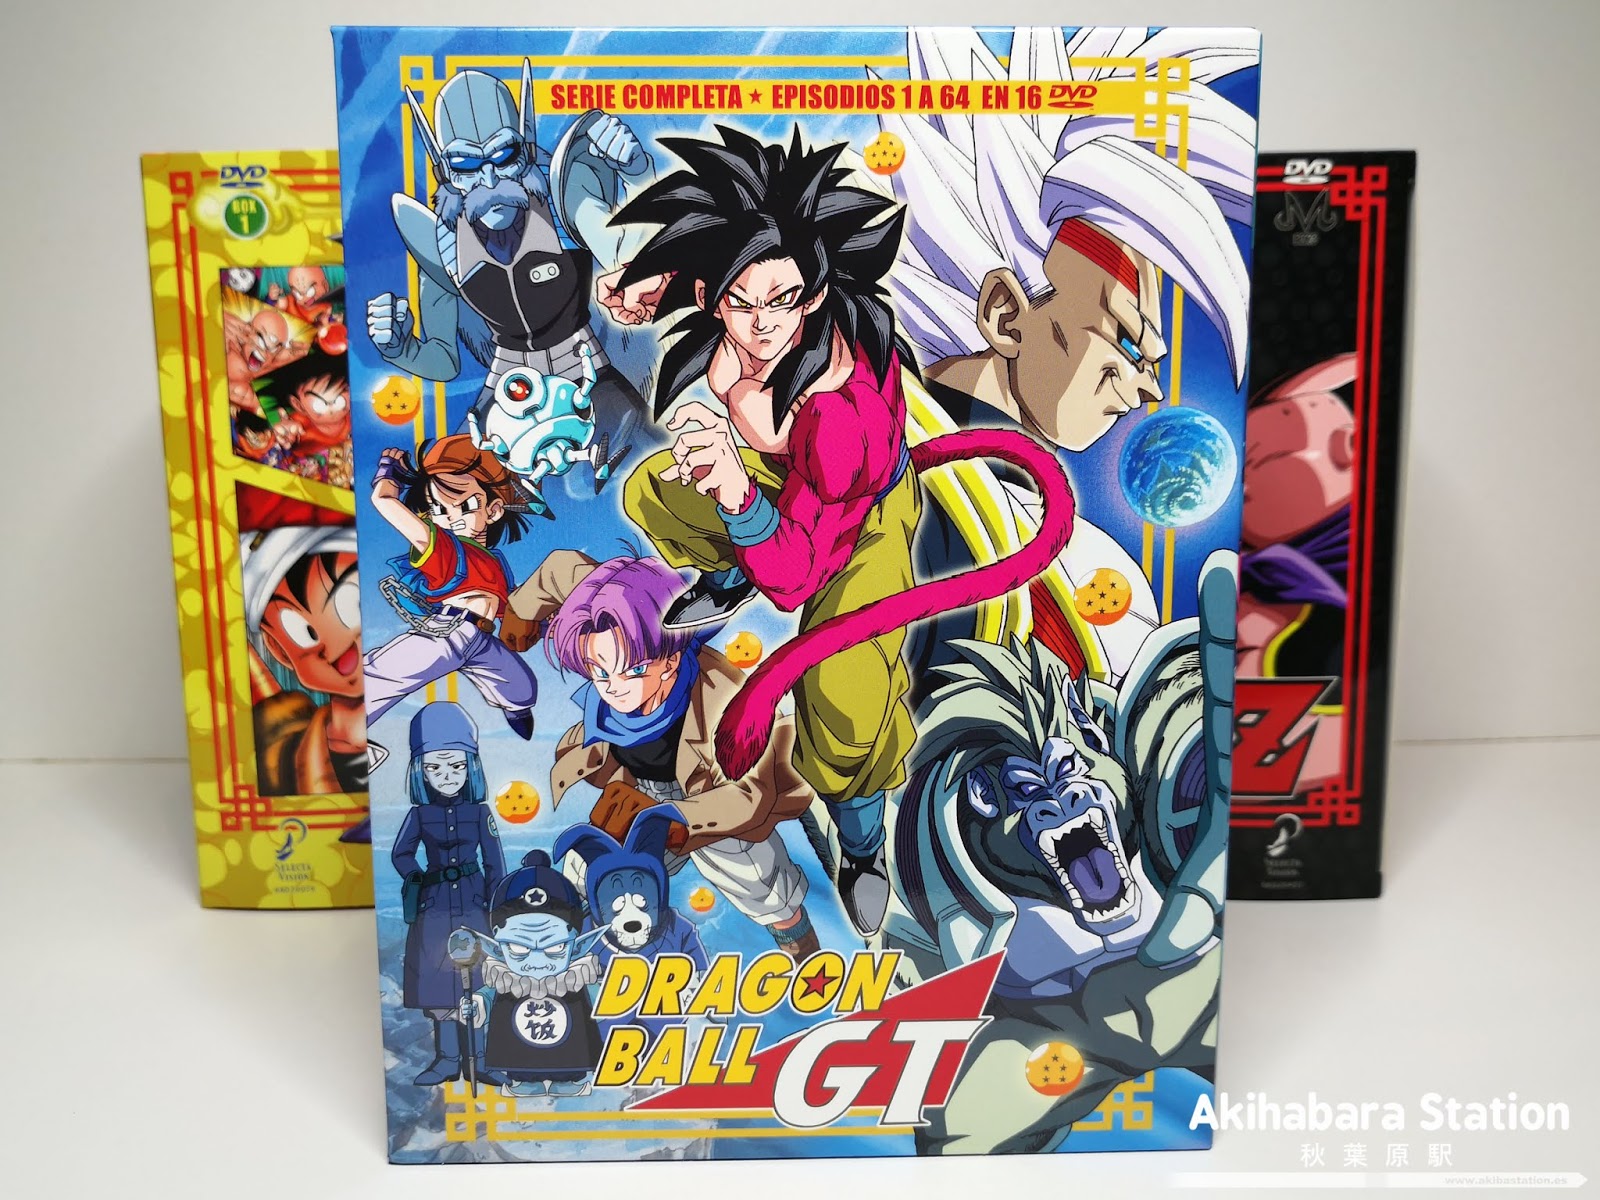 Gaviota orificio de soplado sal Anime: Review de Dragon Ball GT BOX: Sagas Completas, de Selecta Visión.